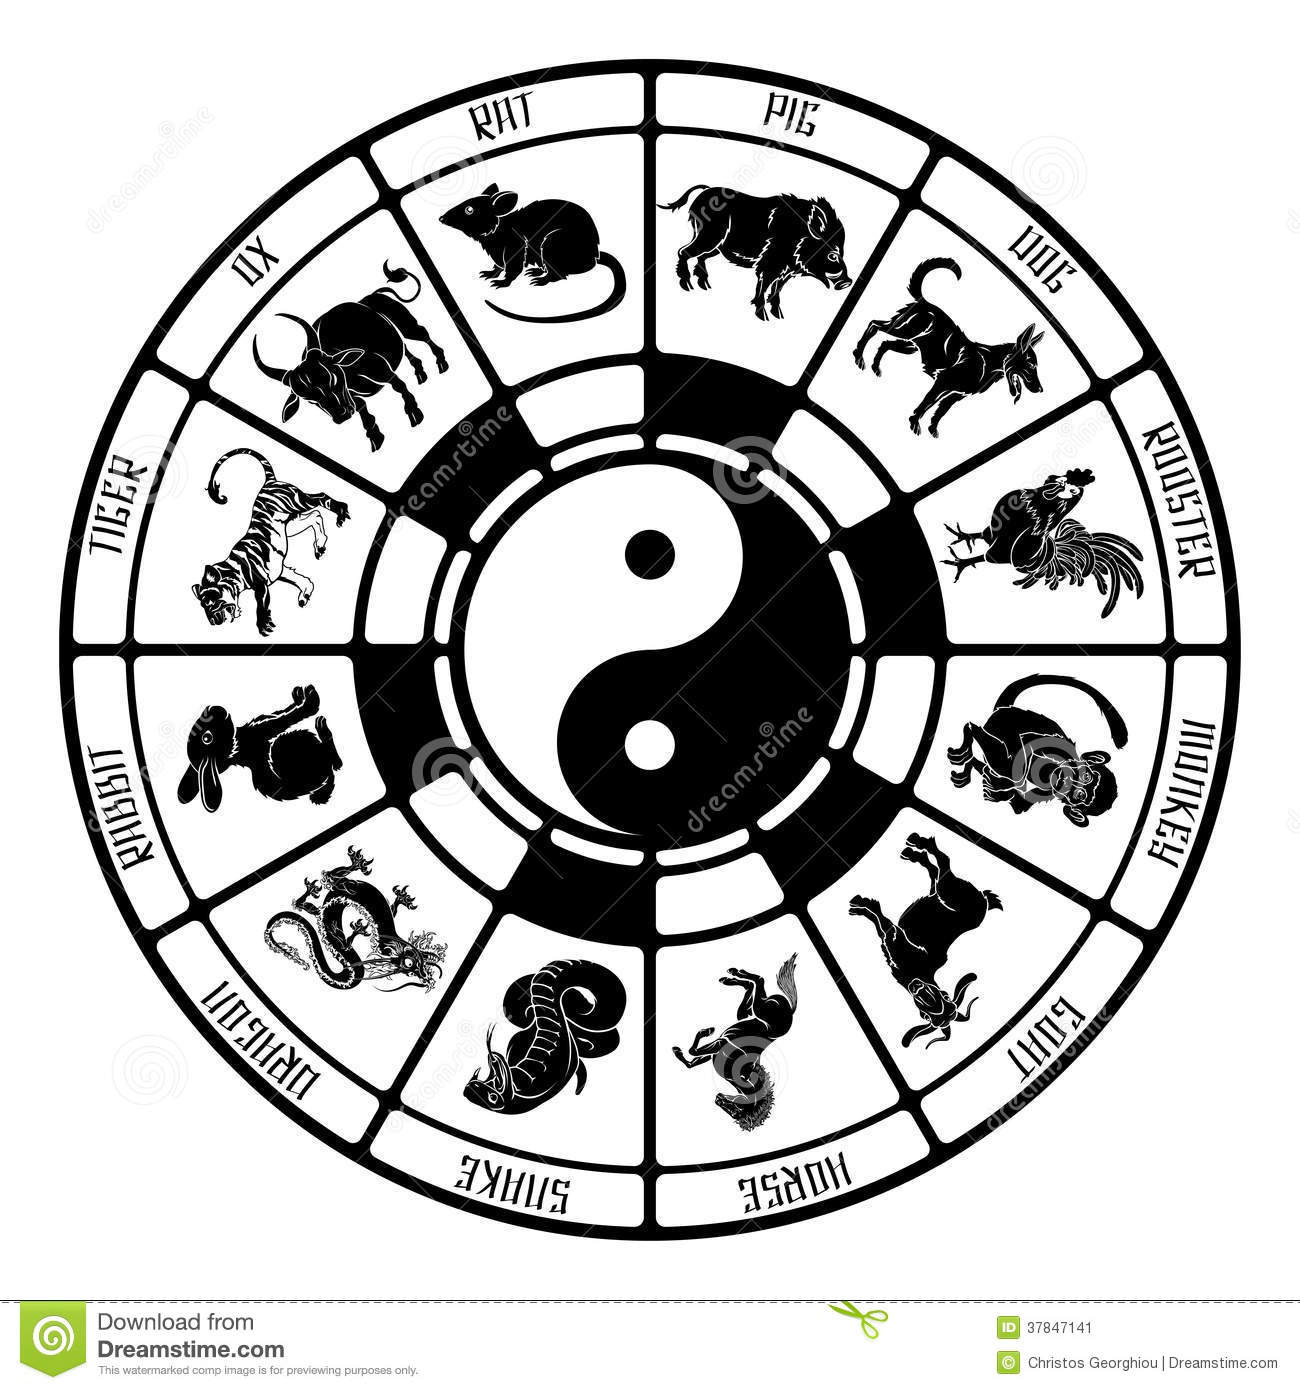 Les Animaux Chinois De Zodiaque Illustration De Vecteur pour Signes Du Zodiac Chinois